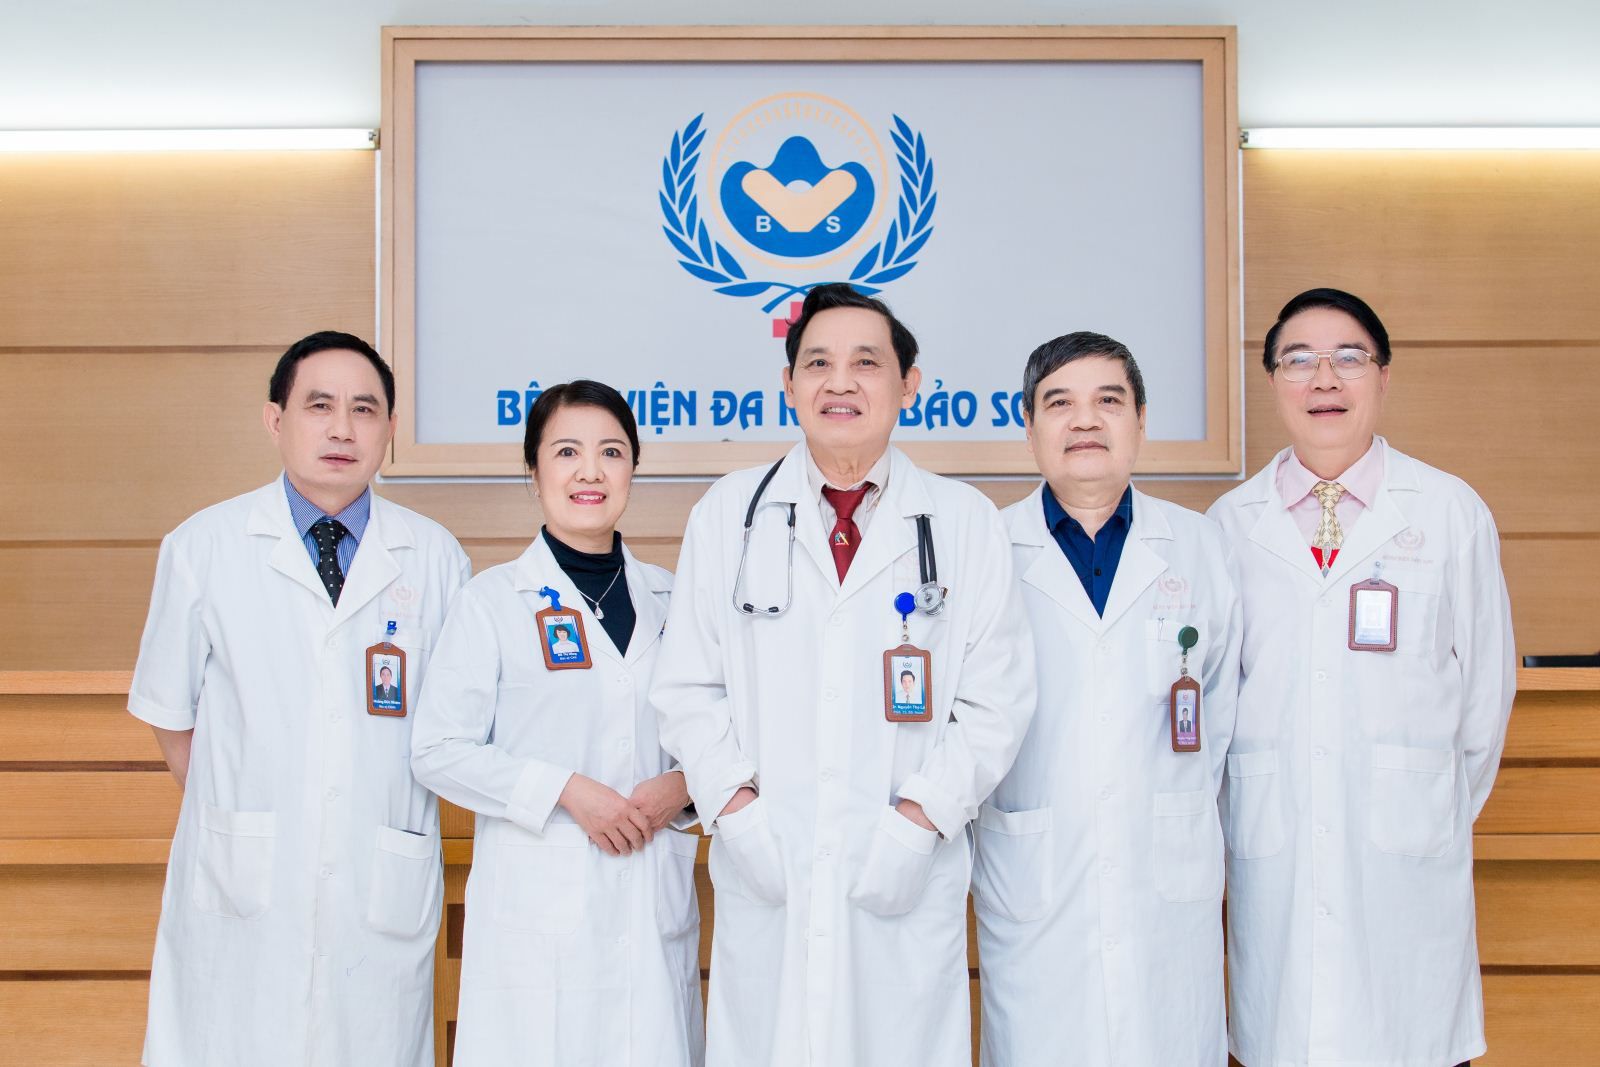 Đội ngũ bác sĩ Bệnh viện Đa khoa Bảo Sơn dày dặn kinh nghiệm